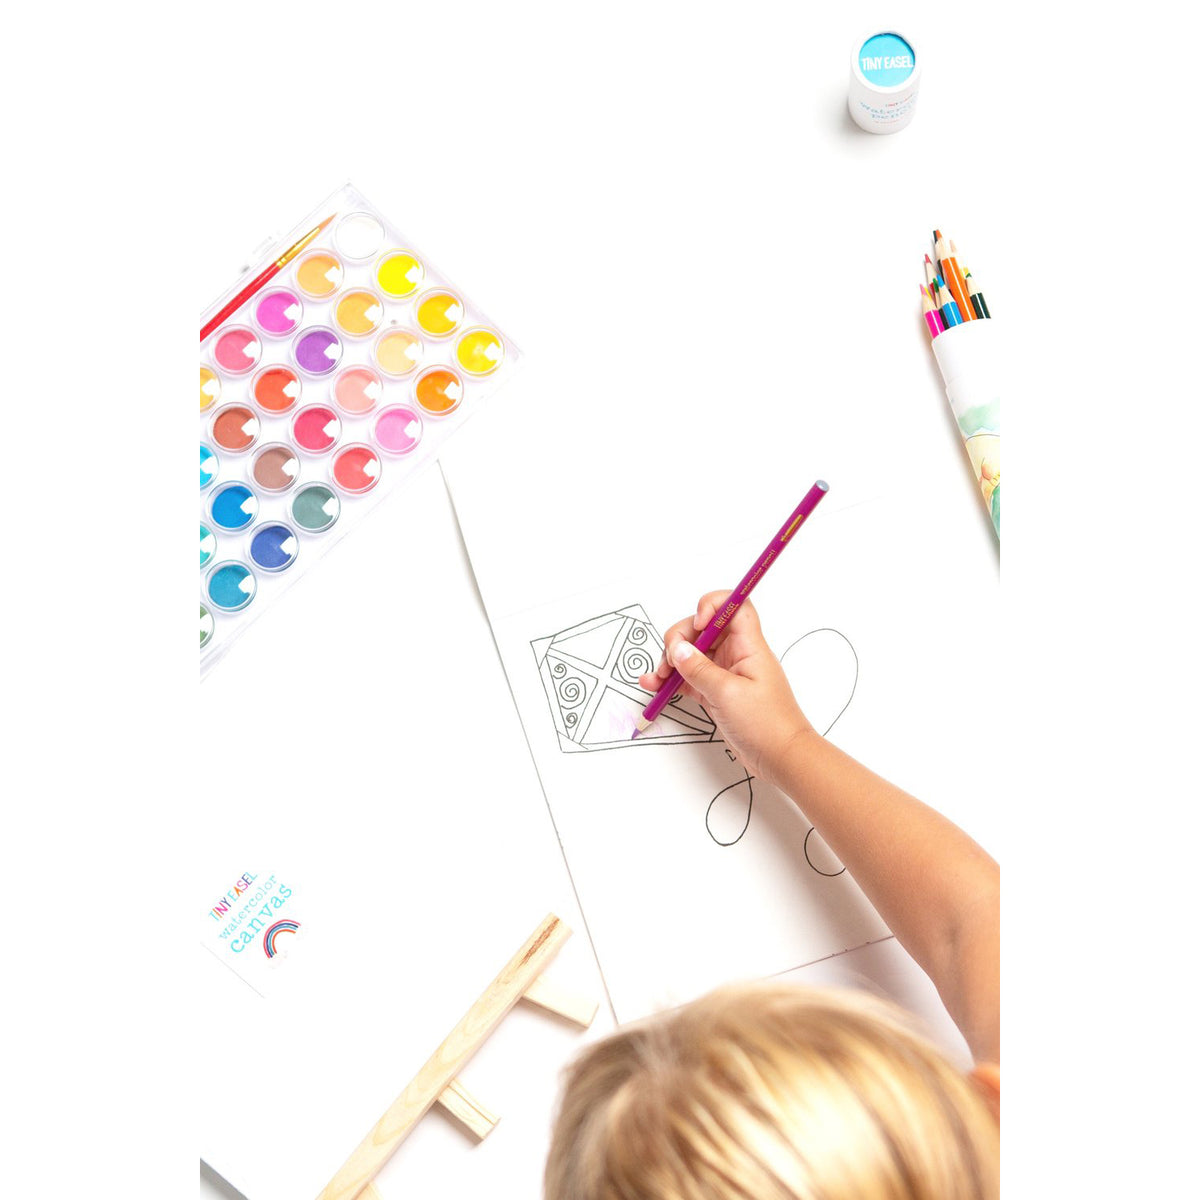 Children’s Painter Essentials Kit